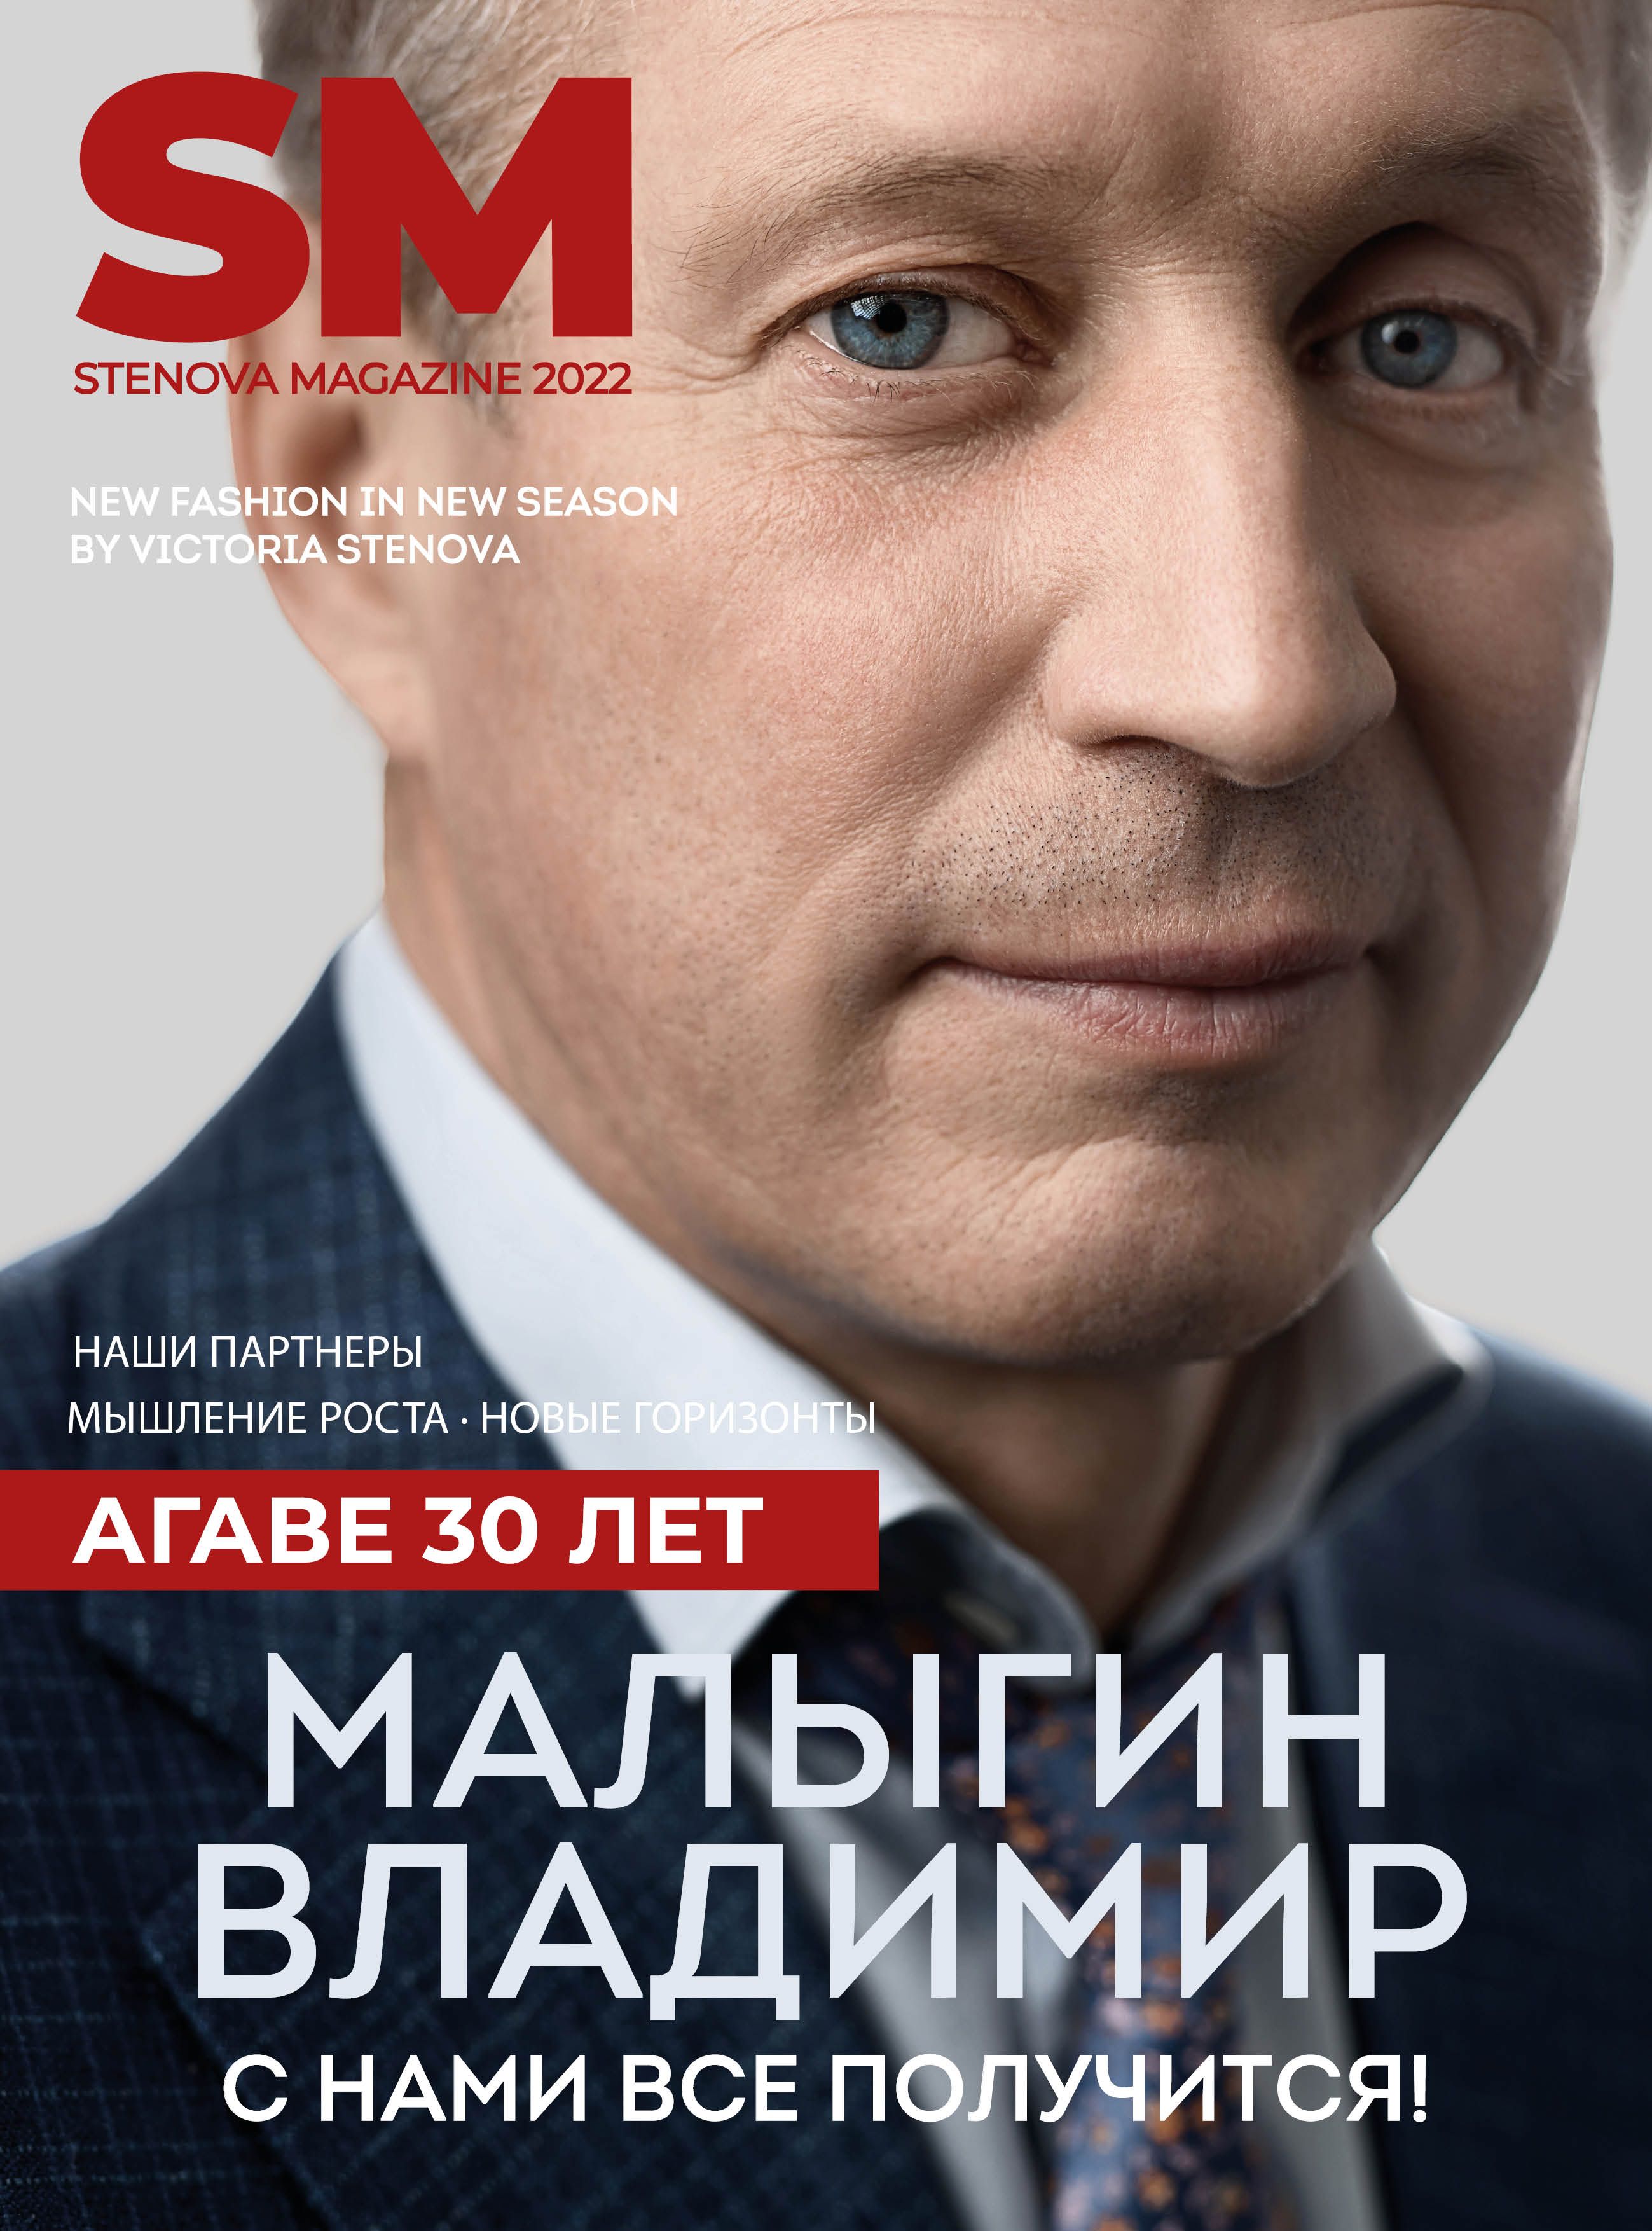 Stenova Magazin 2022